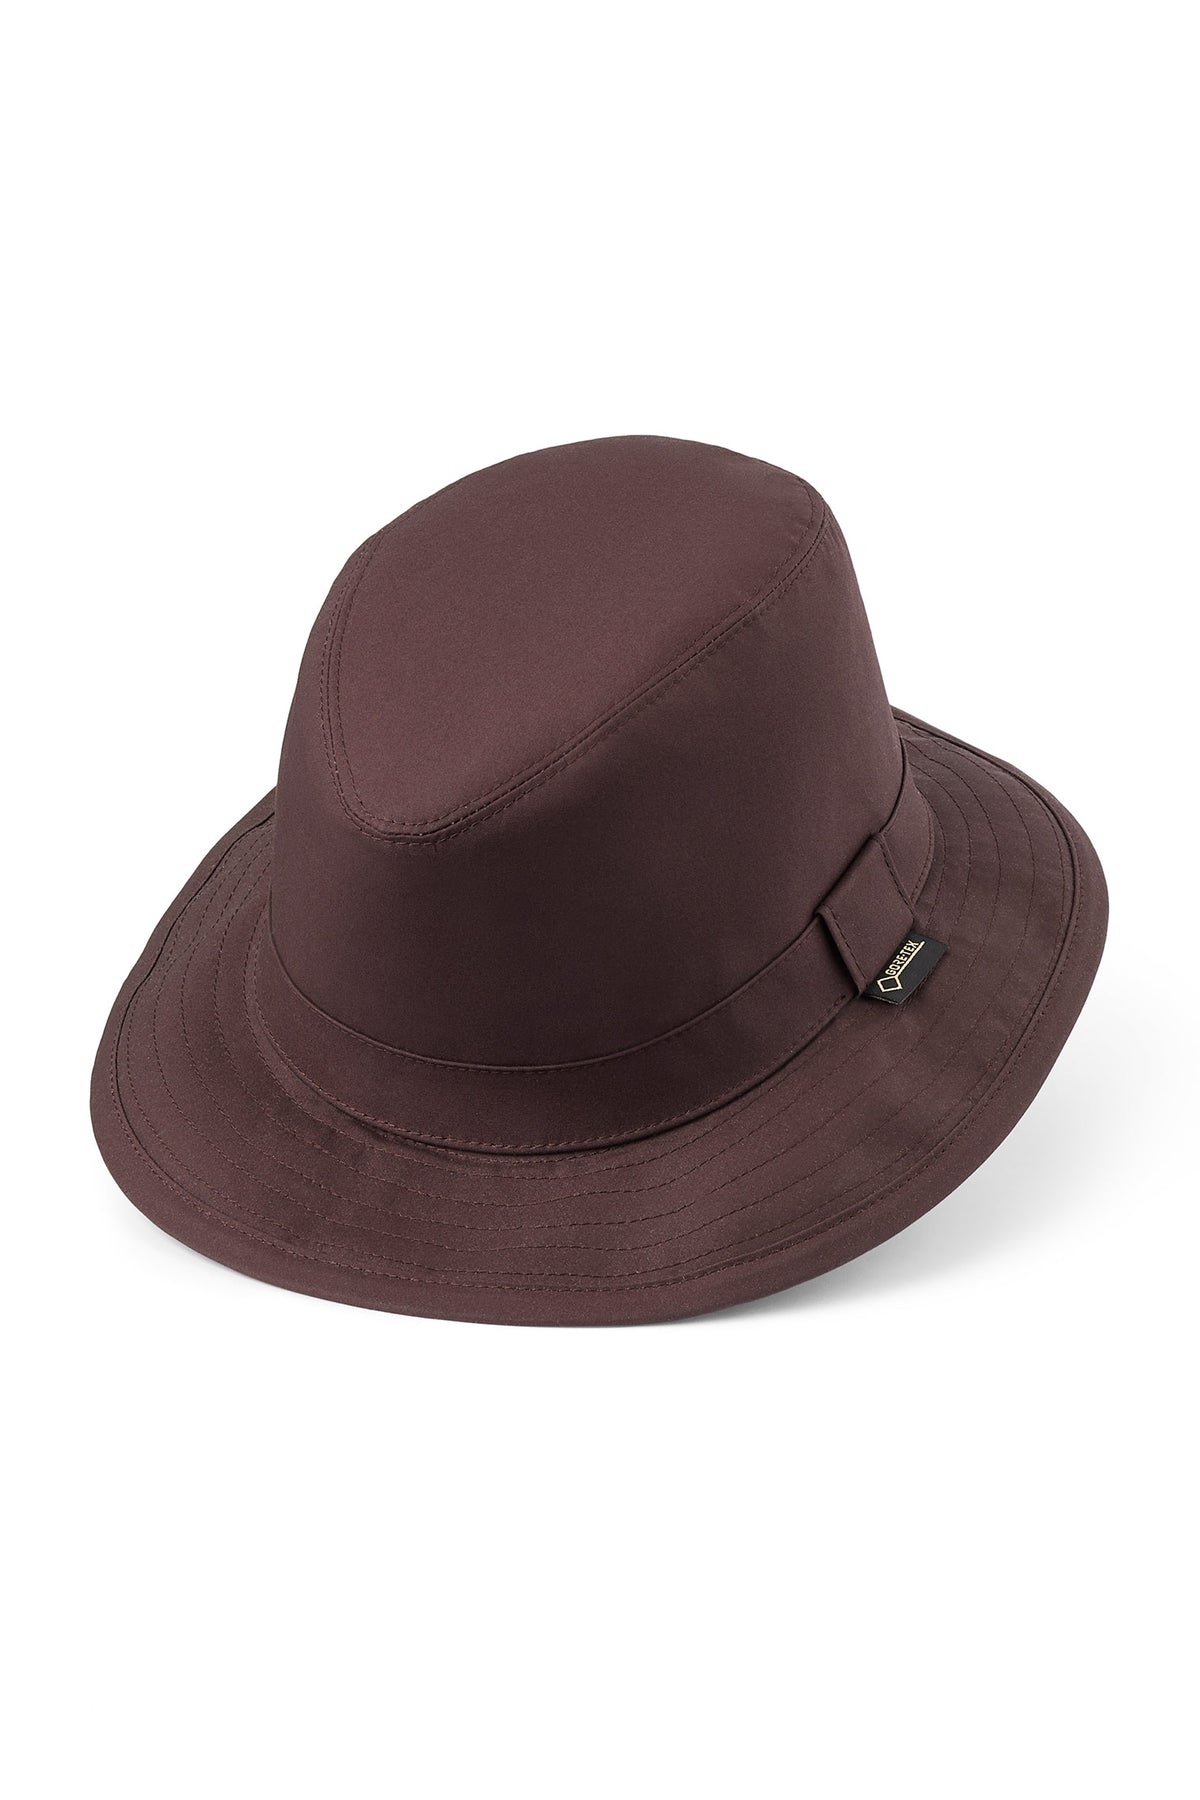 Tay GORE-TEX Hat - Lock & Co. Hats for Men & Women